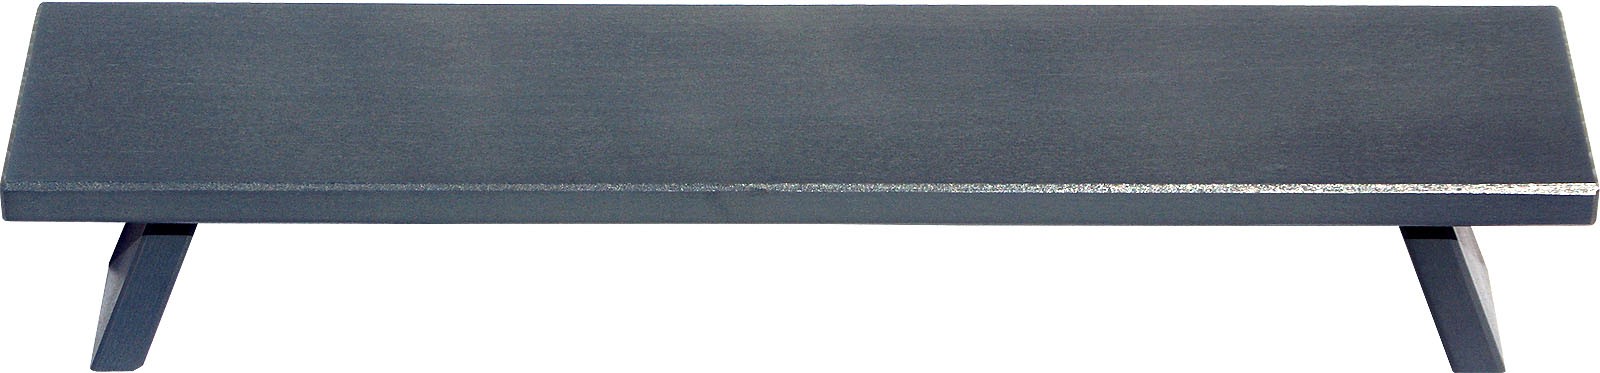 WEIGLA Fensterbank, breit - grau, 60 cm